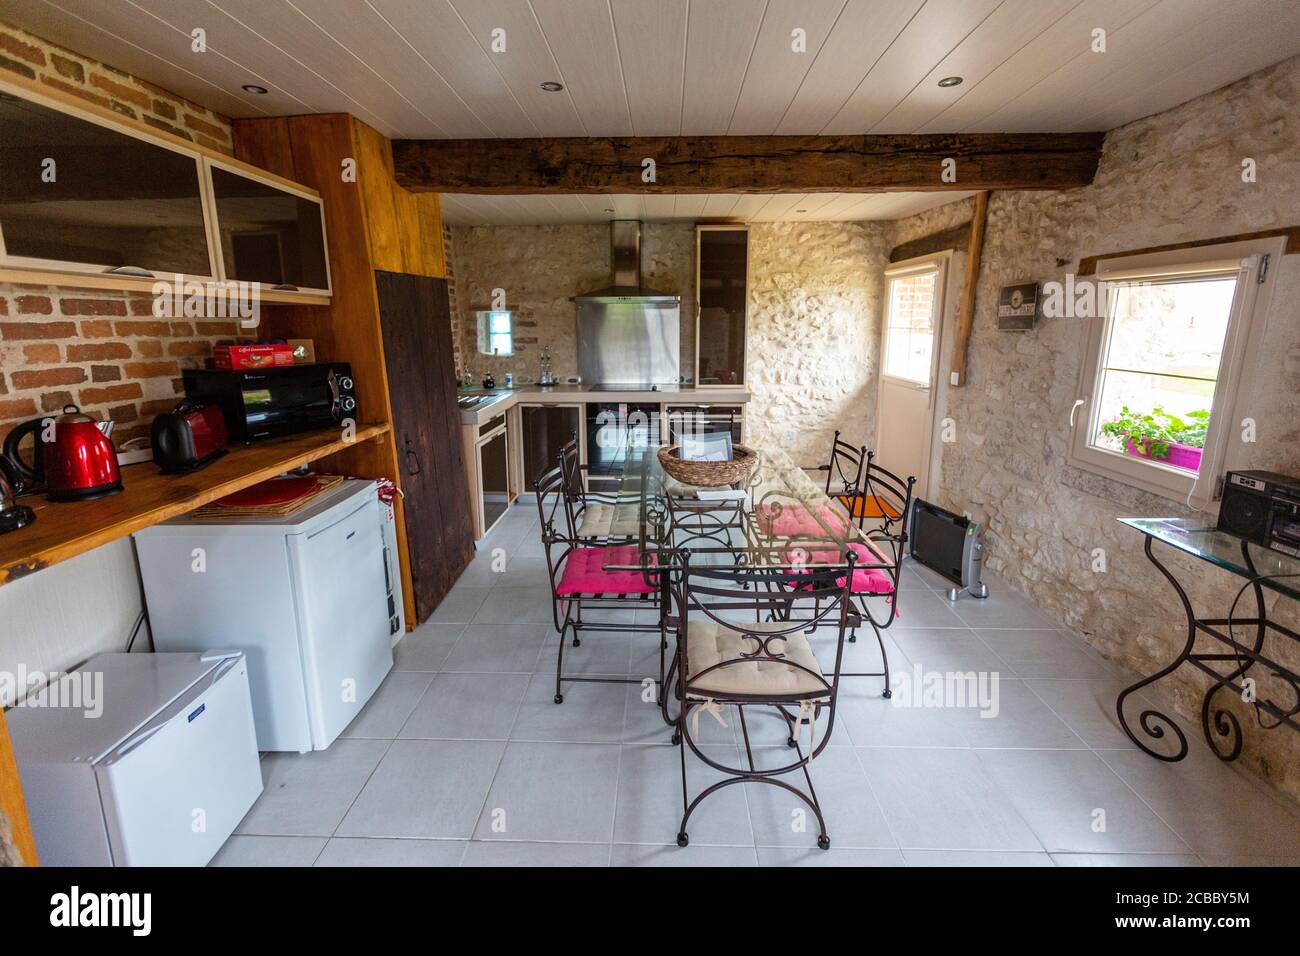 Gite, barn like type of tourist accommodation near Villeherviers, Loir-et-Cher,  France. Stock Photo